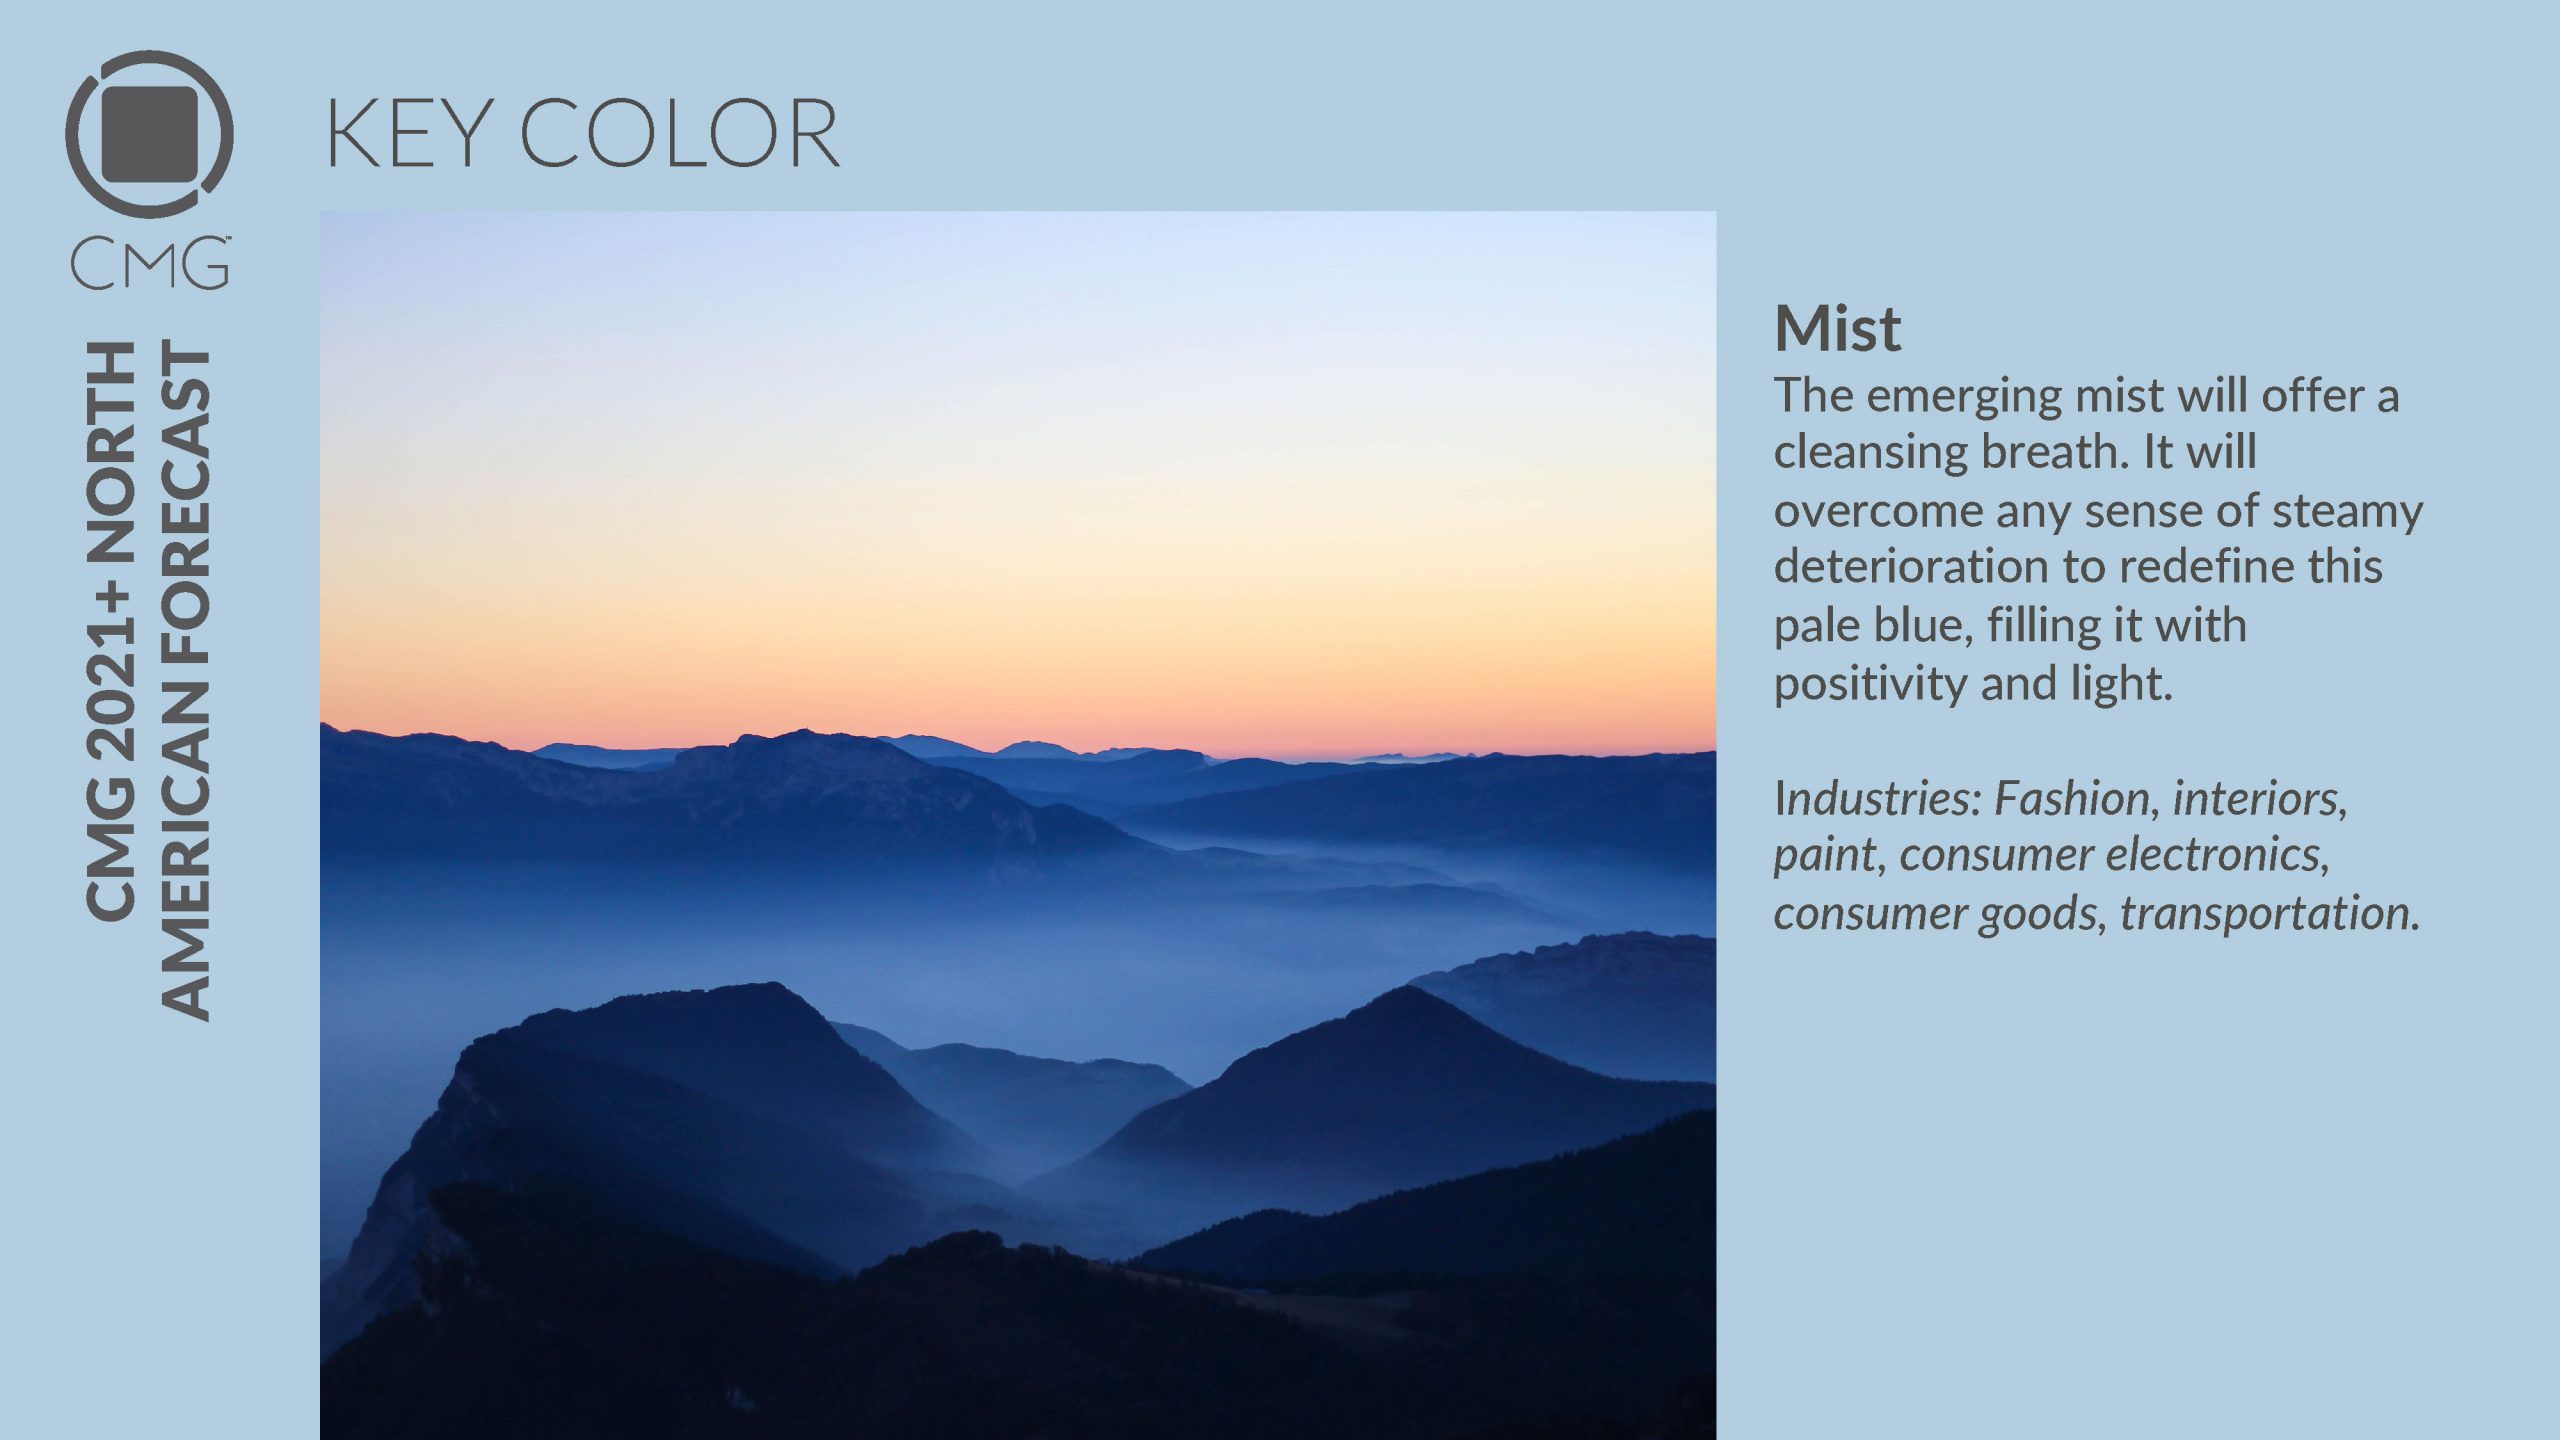 CMG 2021 Key Color Mist